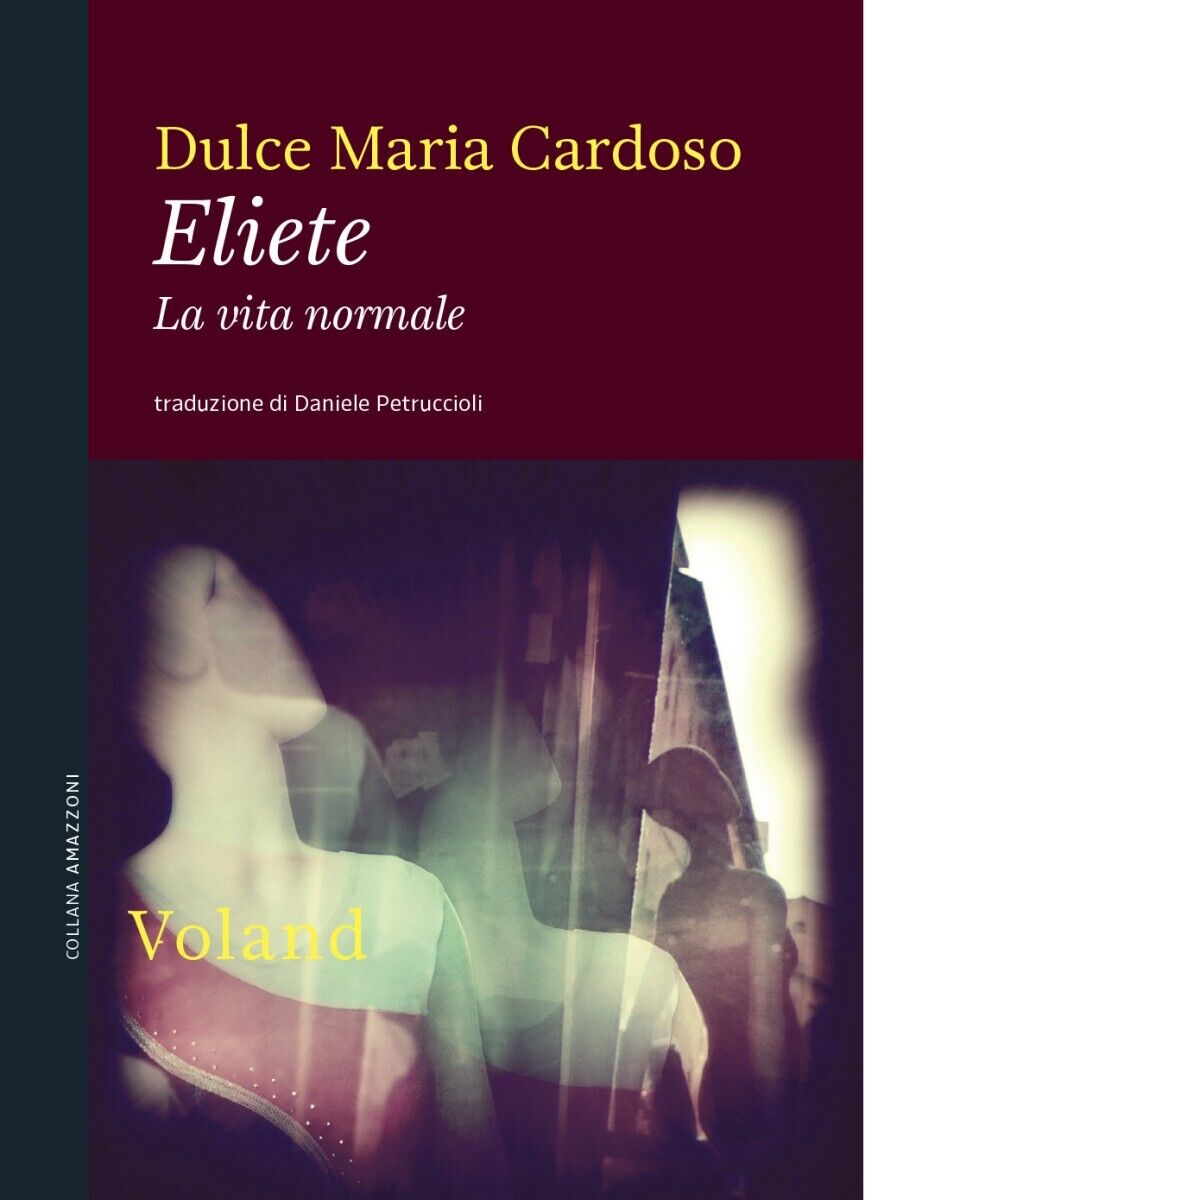  Eliete. La vita normale di Dulce Maria Cardoso, 2020, Voland